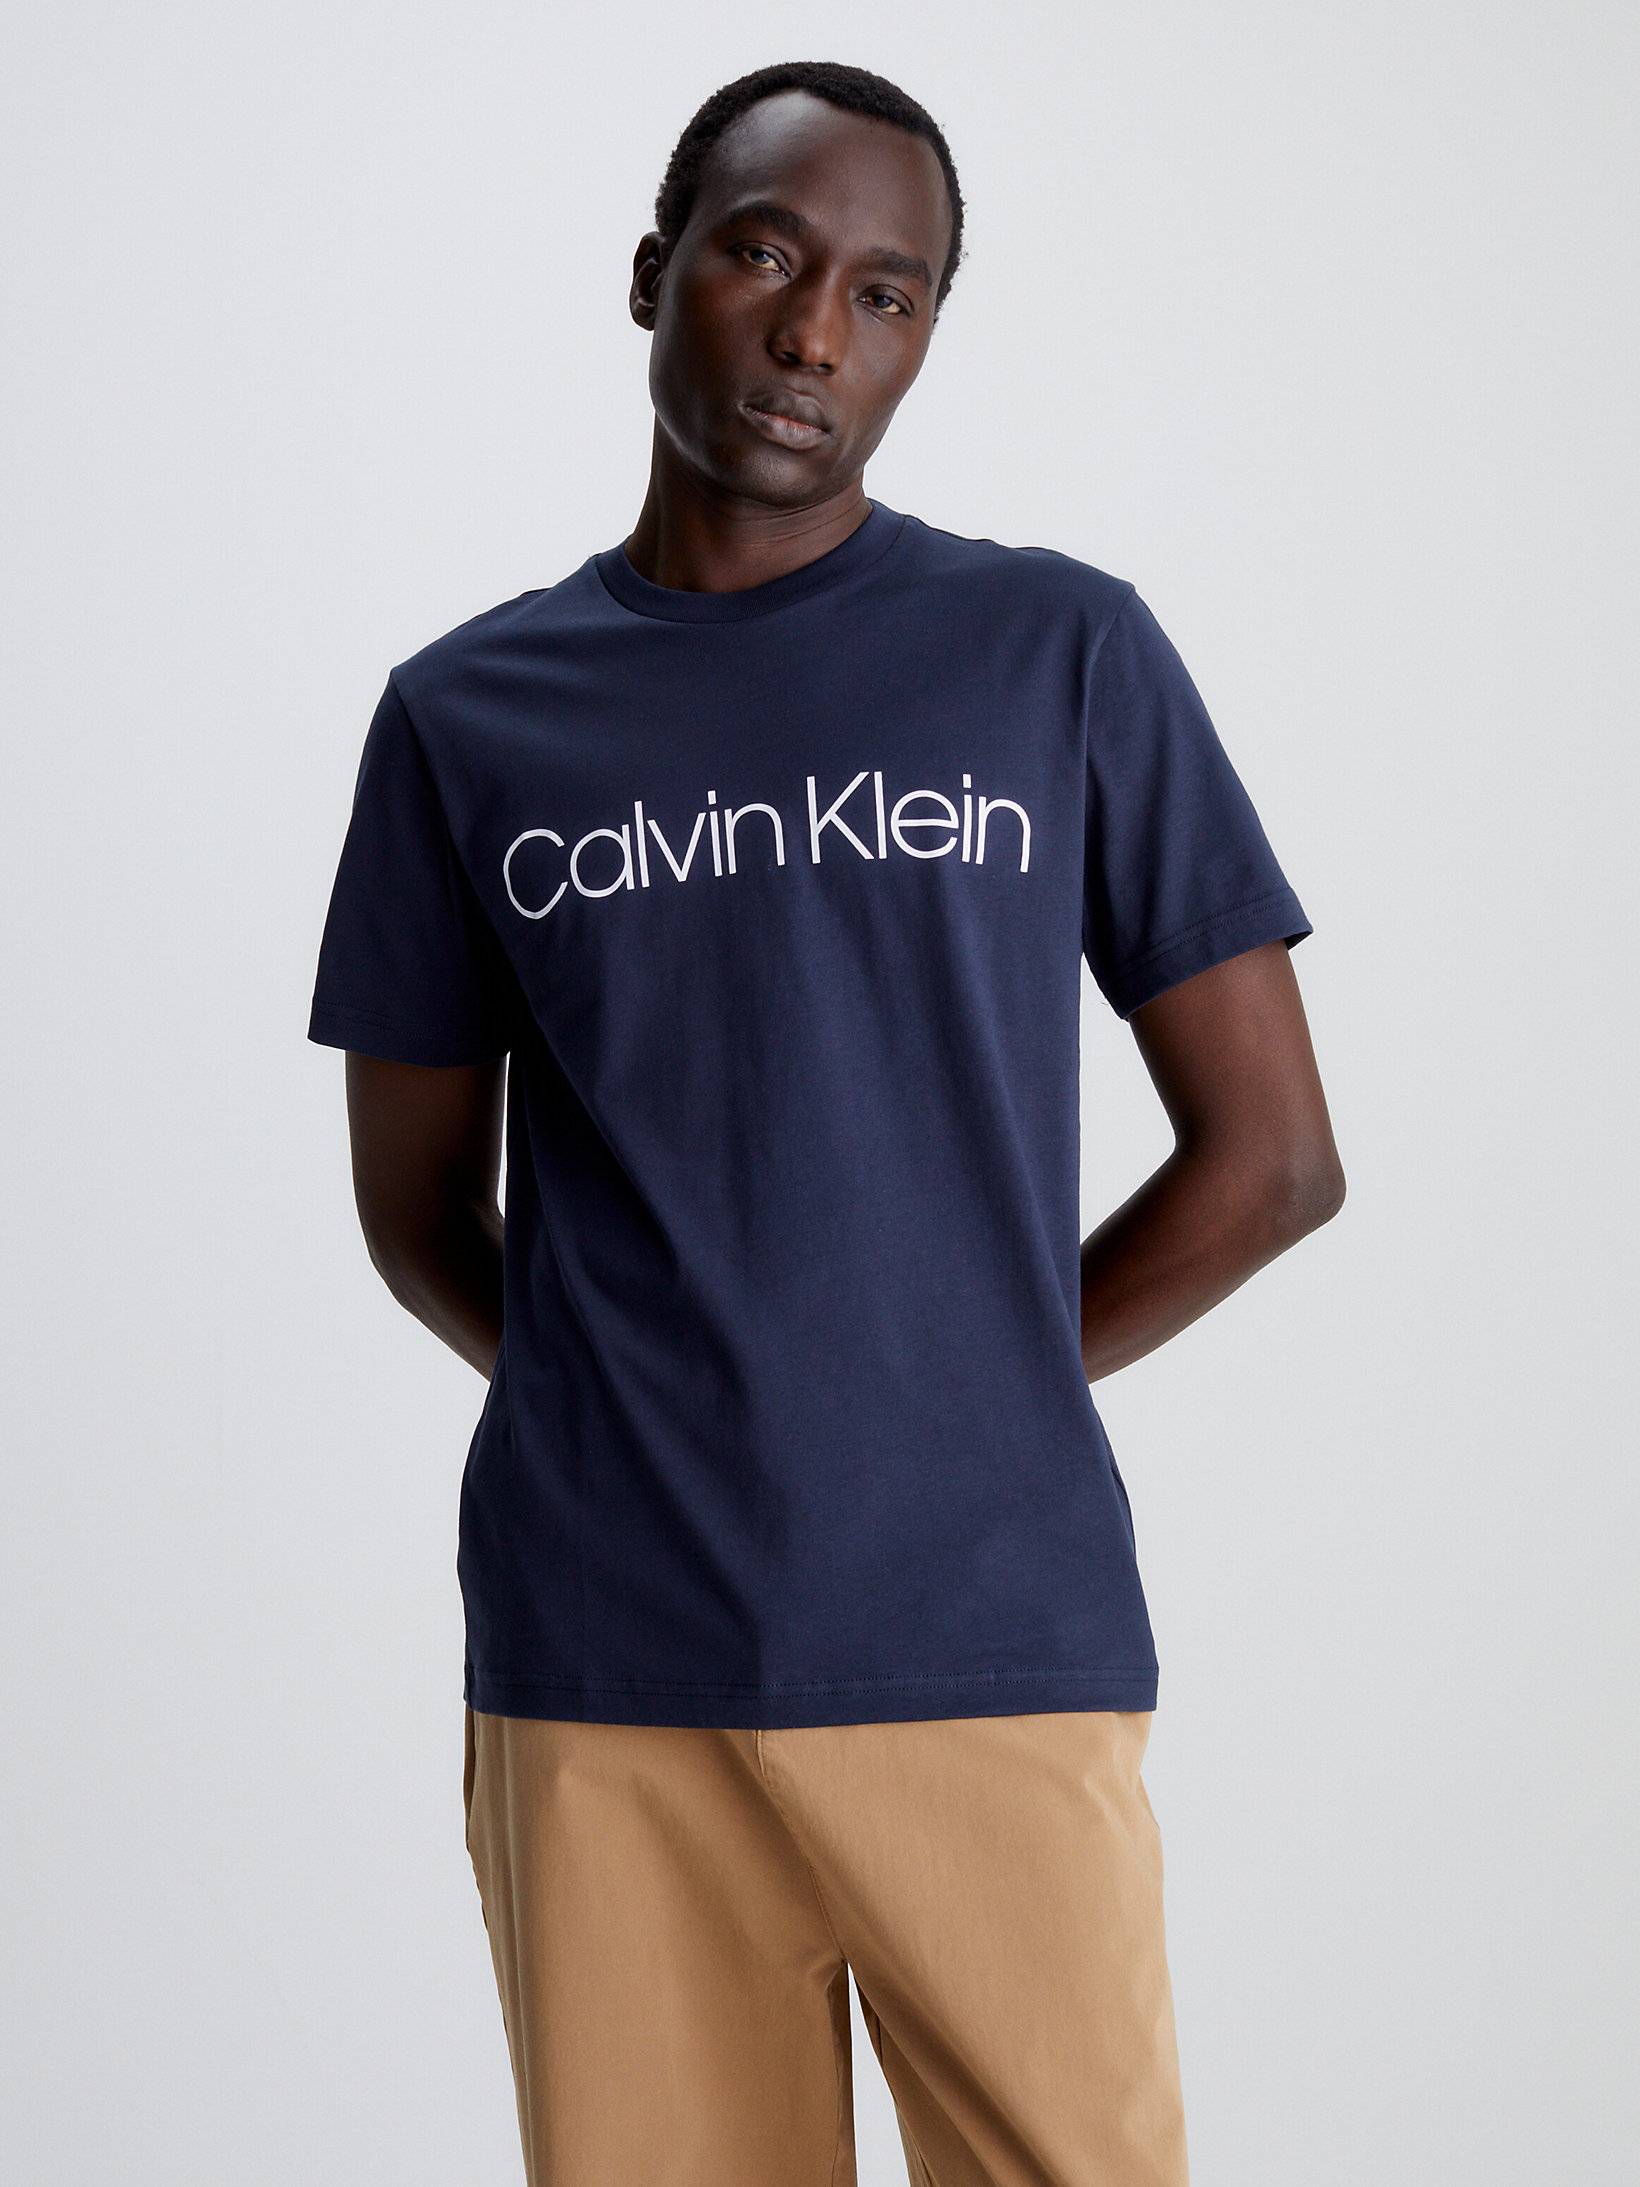 Top 82+ imagen buy calvin klein t shirts